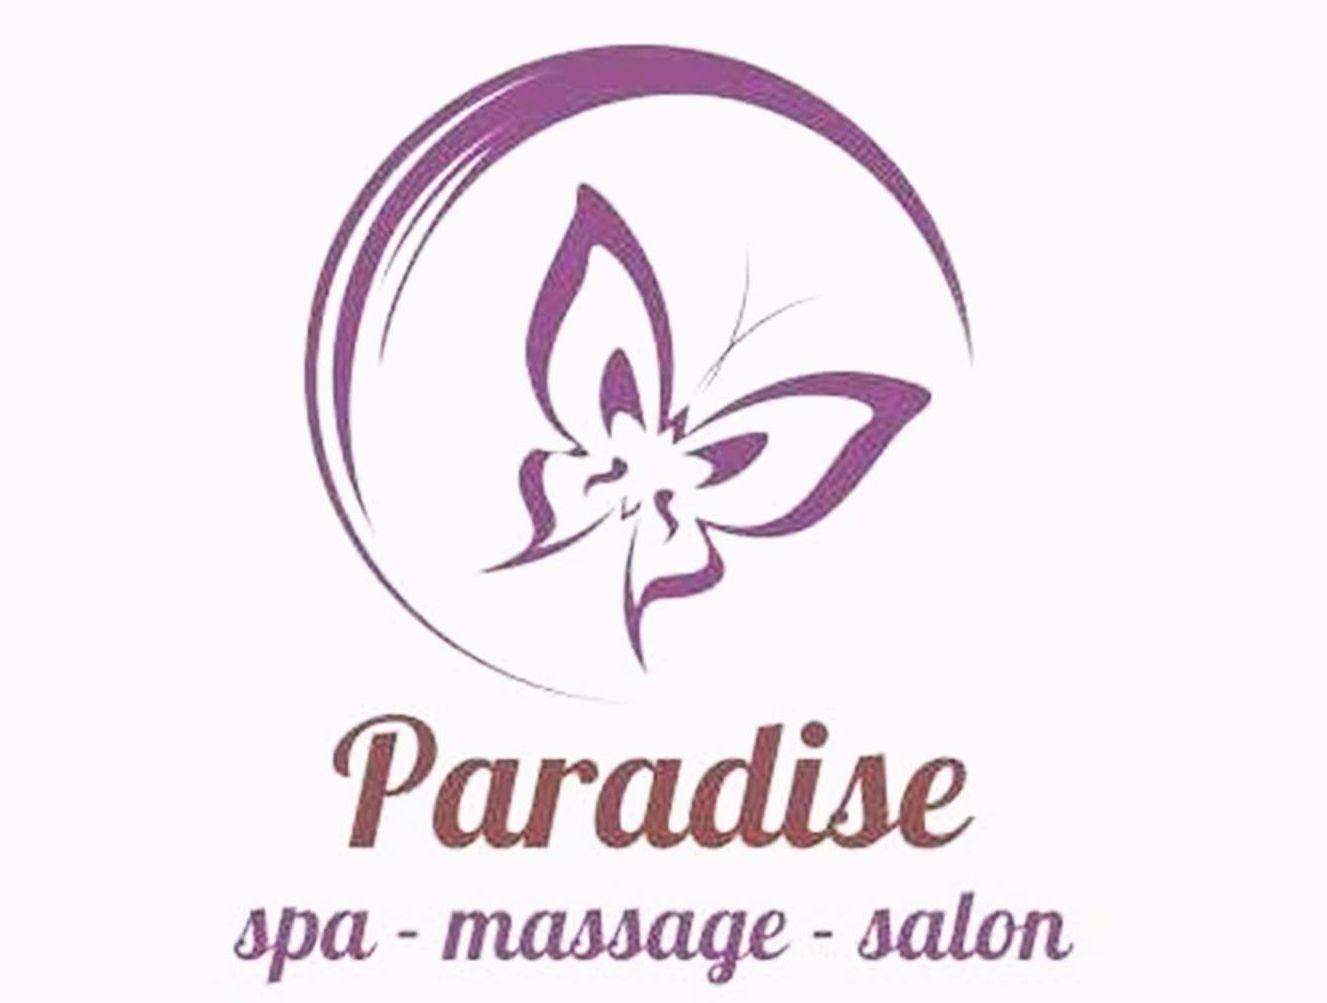 Paradise Salon Logo - Paradise Spa & Salon - Businesses - Quesnel Downtown Association